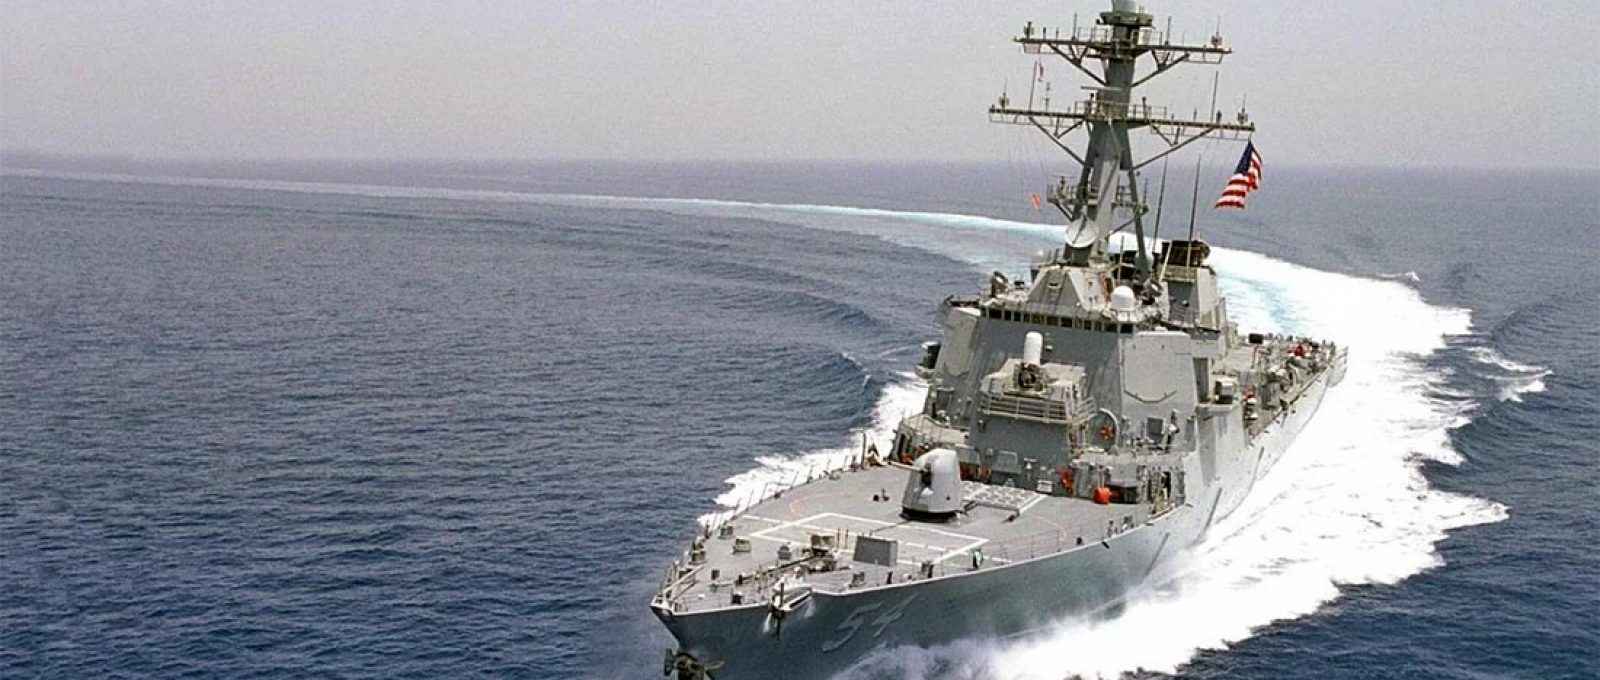 A Marinha dos EUA disse que o destroier USS Curtis Wilbur conduziu um “trânsito de rotina no Estreito de Taiwan” (Foto: AFP).